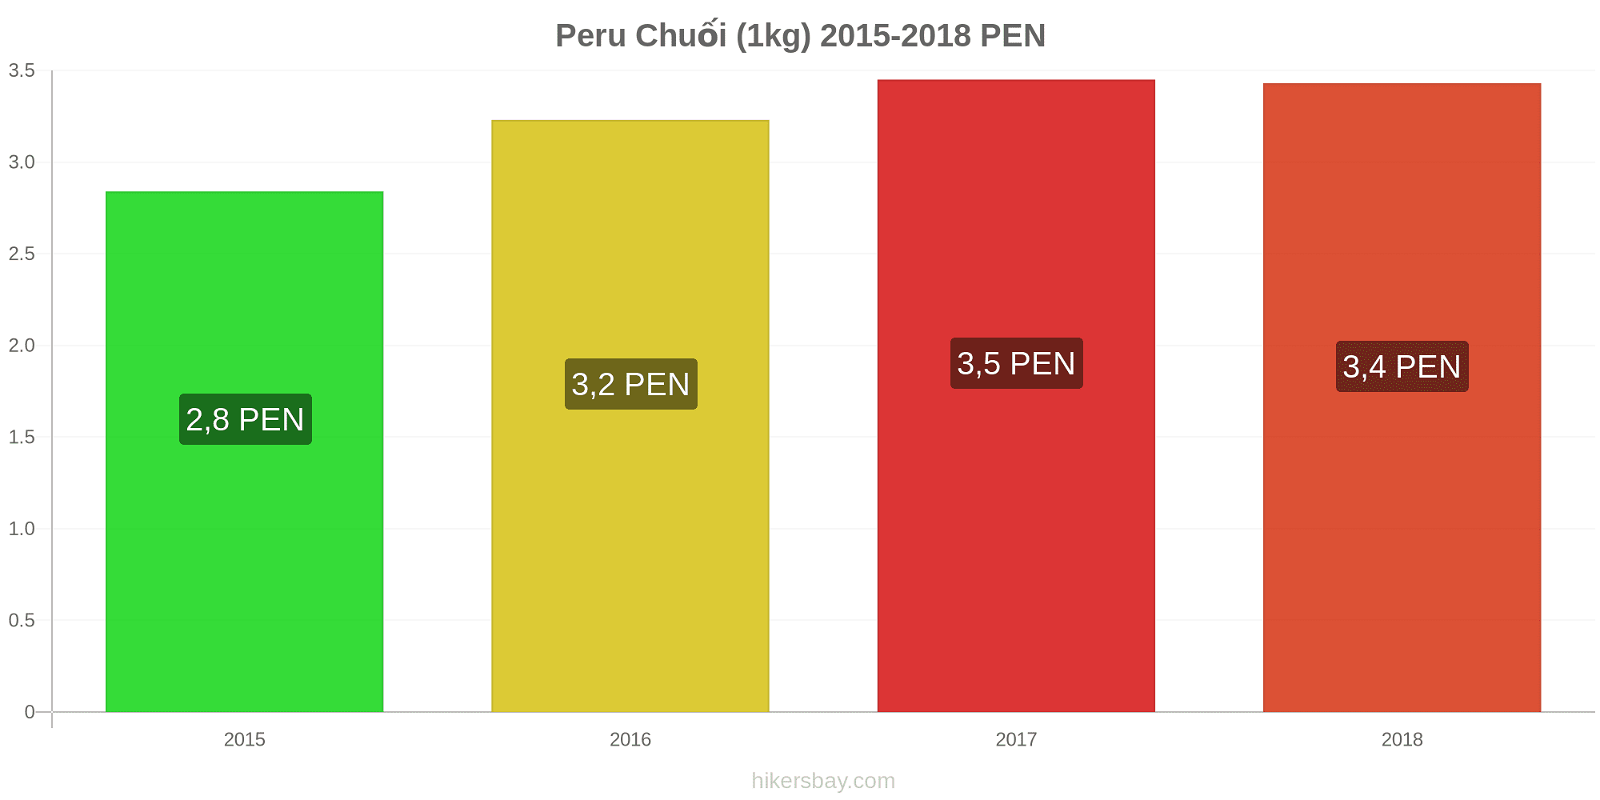 Peru thay đổi giá cả Chuối (1kg) hikersbay.com